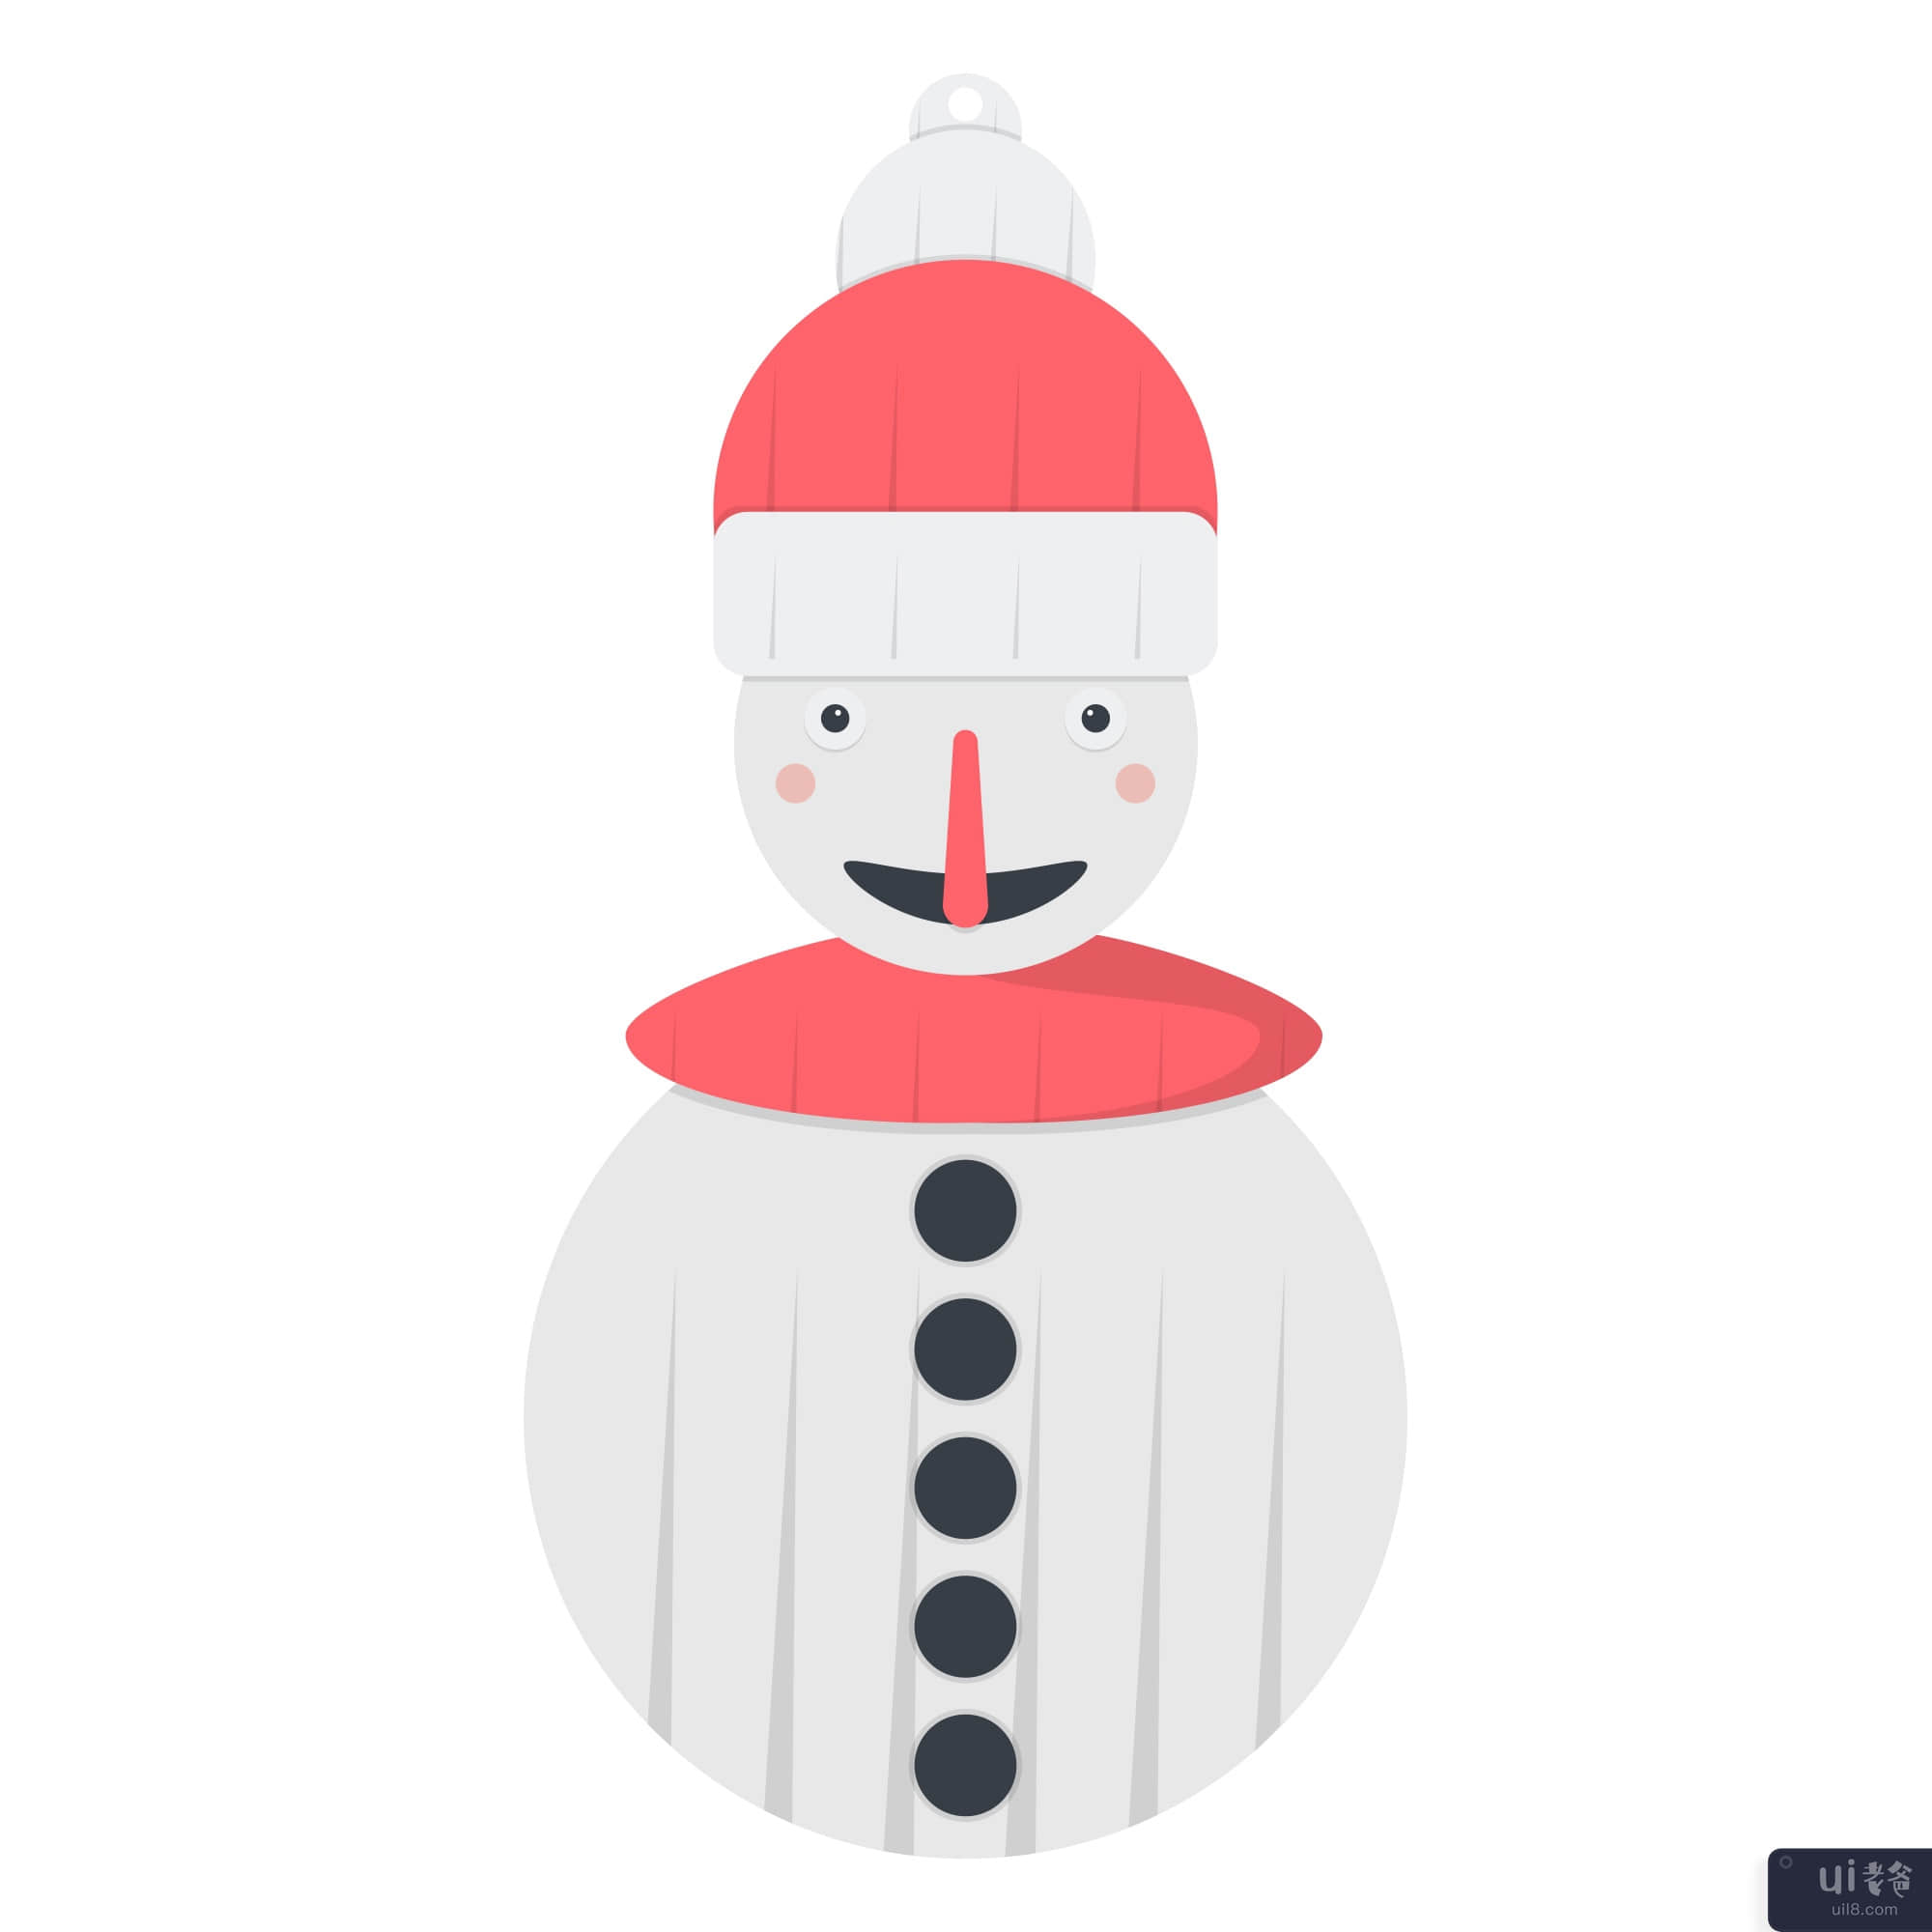 圣诞冷冻圣诞老人图(Christmas frozen Santa illustration)插图2